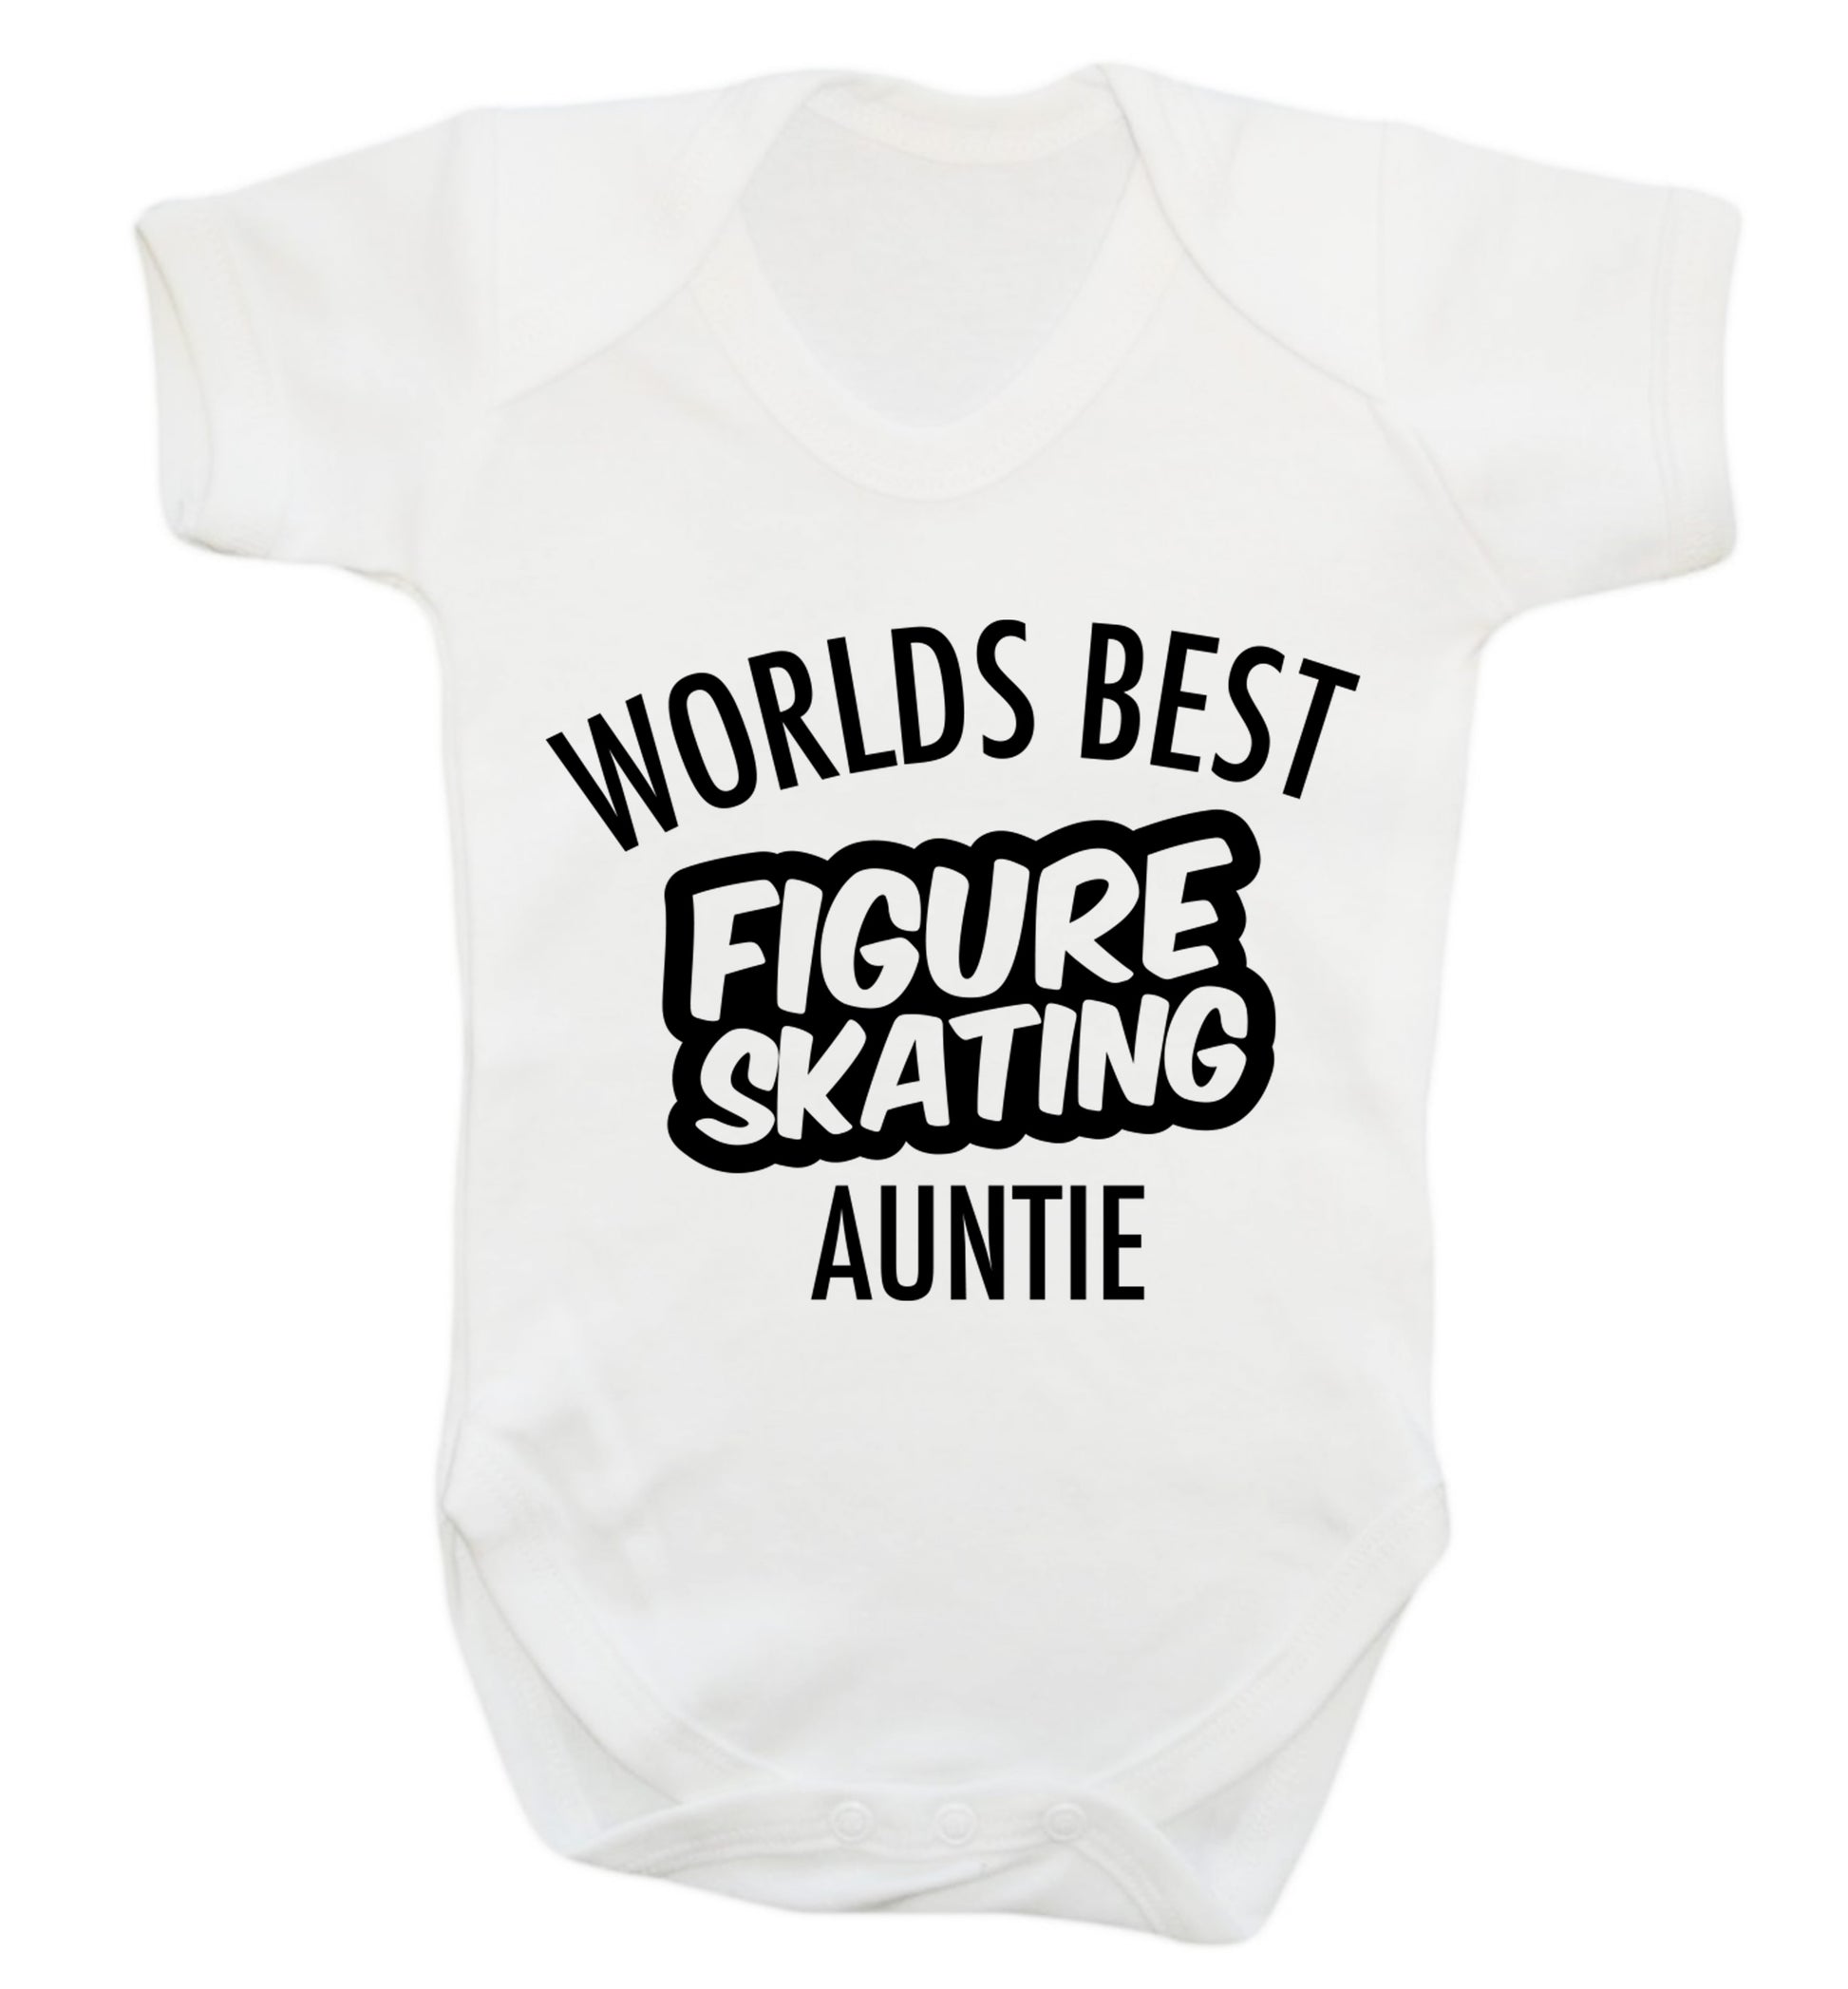 Worlds best figure skating auntie Baby Vest white 18-24 months